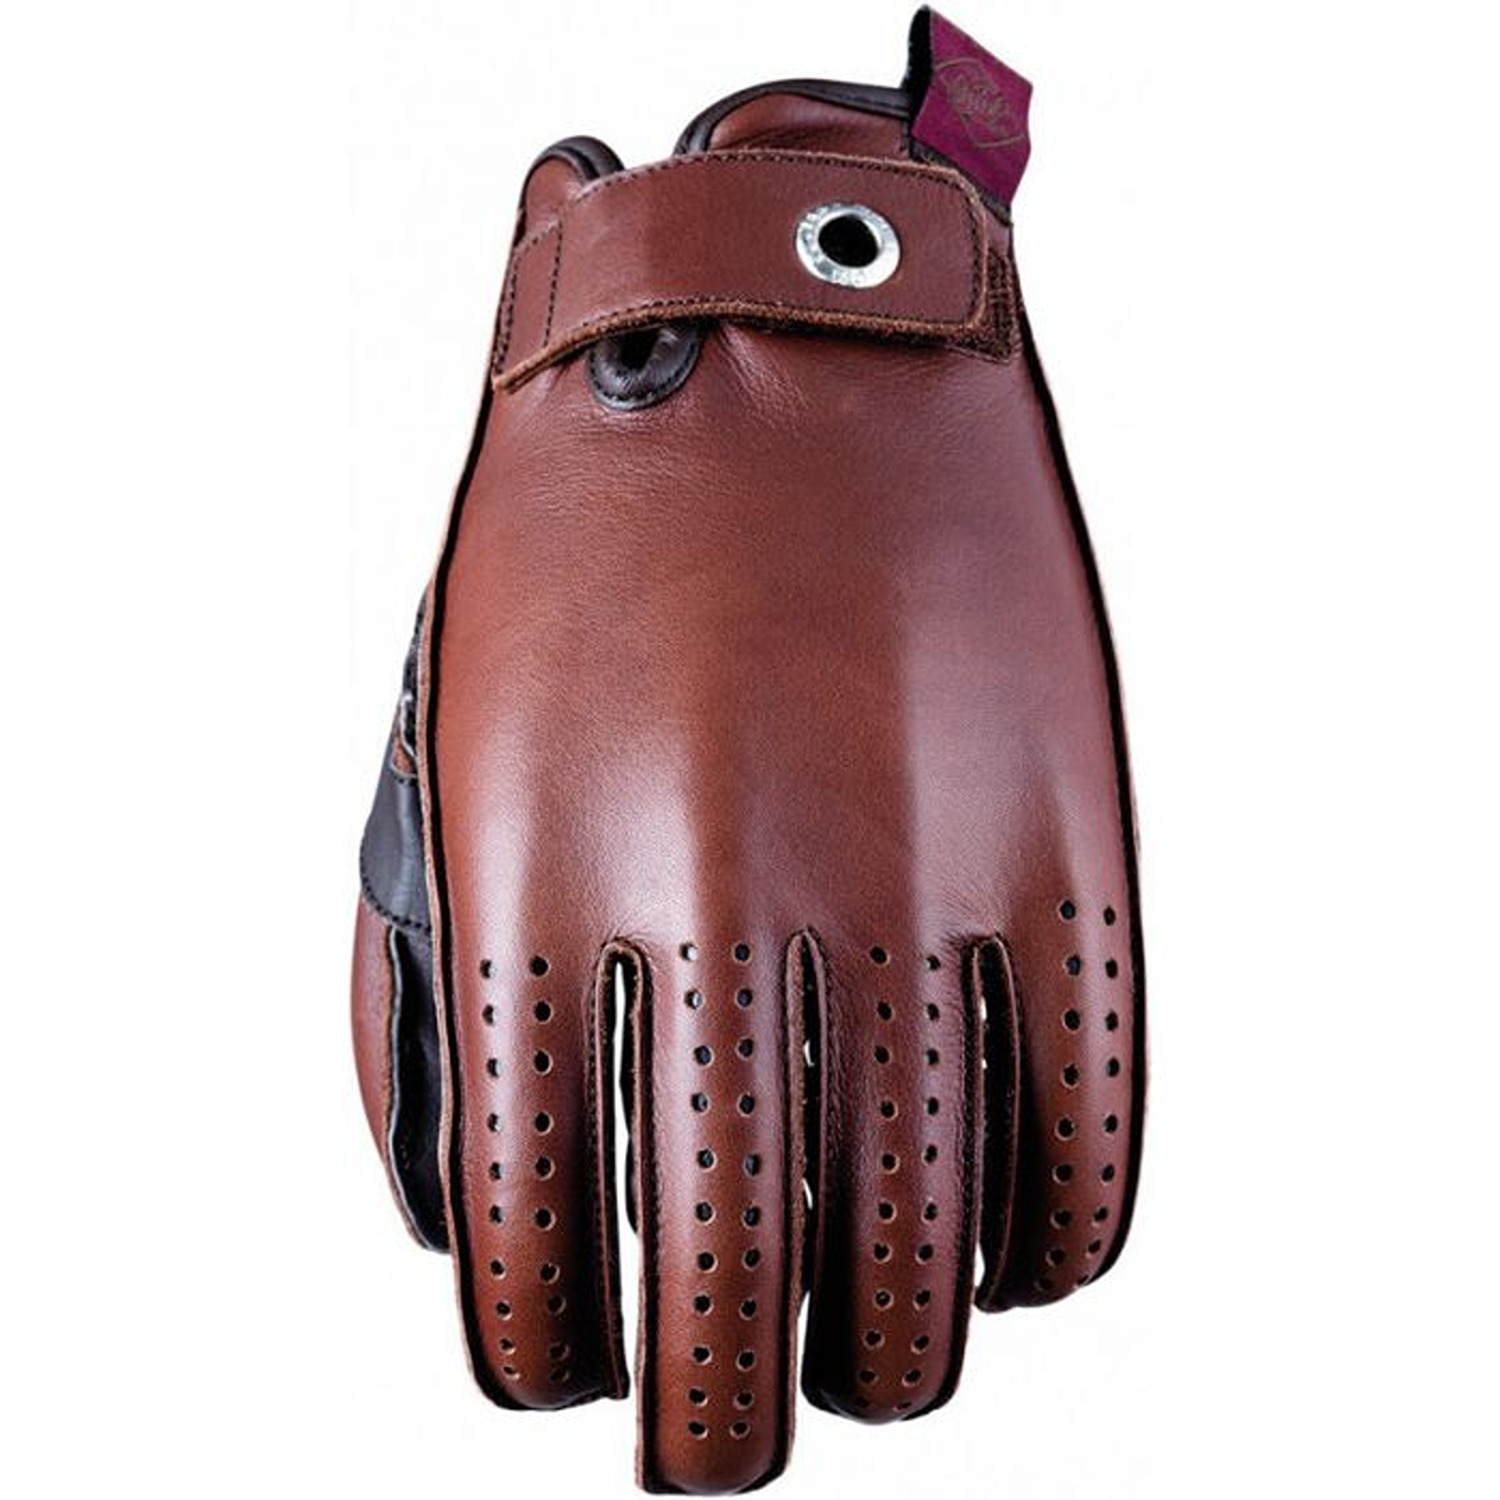 Five Colorado Woman Gloves Brown Size XL